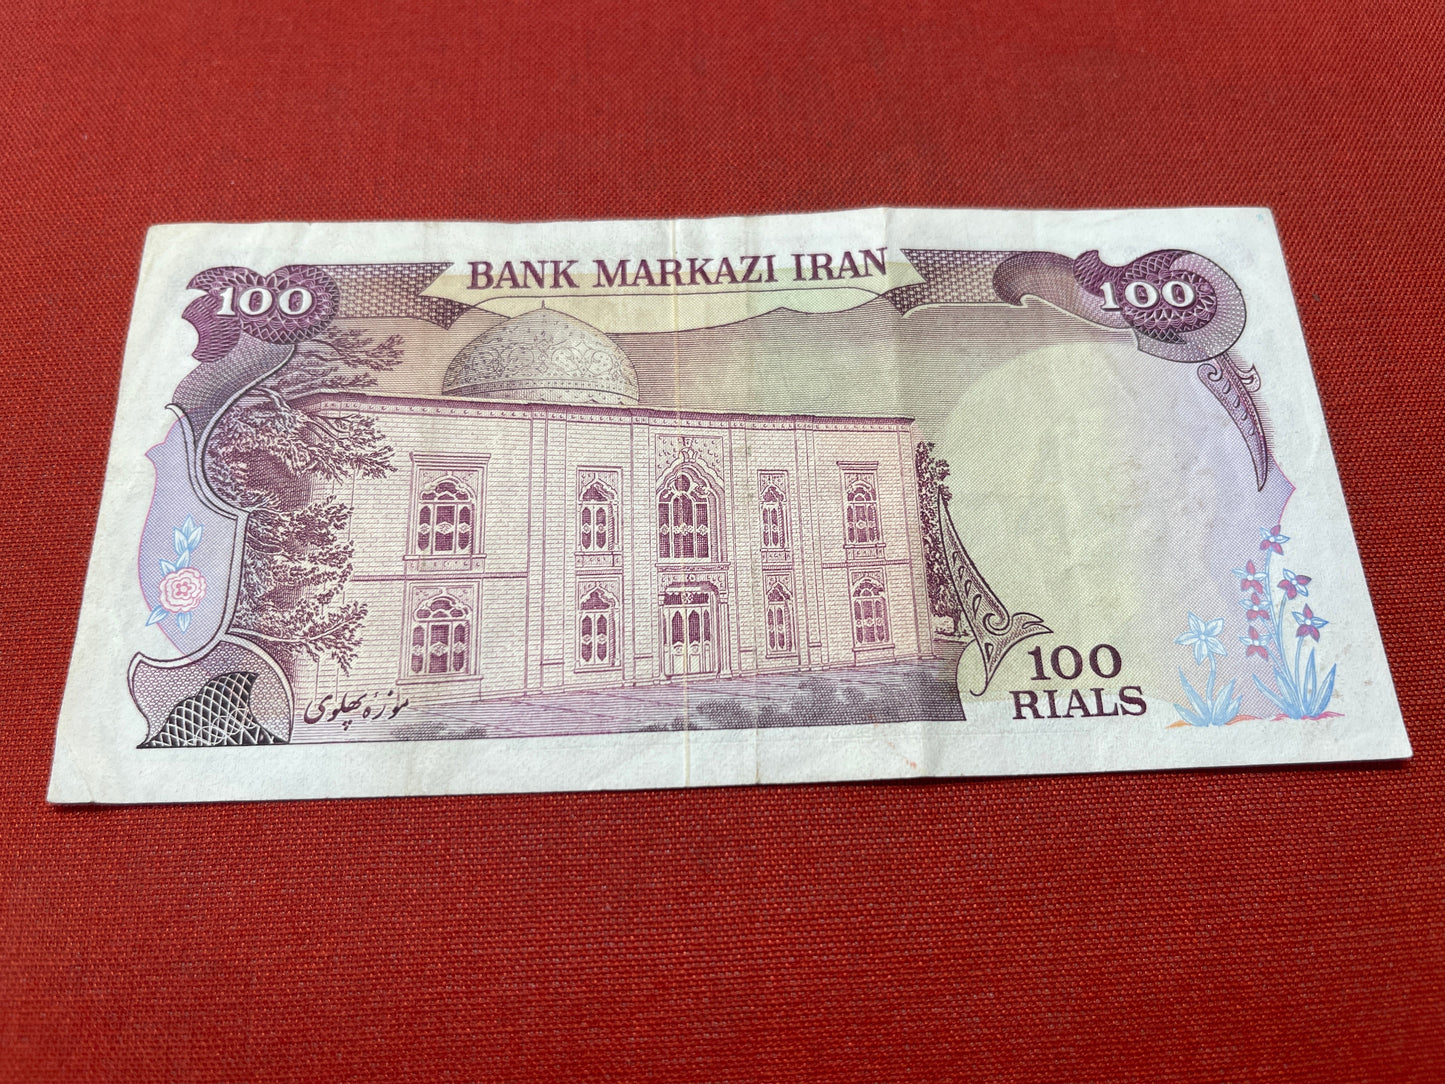 Bank Markazi Iran 100 Rials Banknote